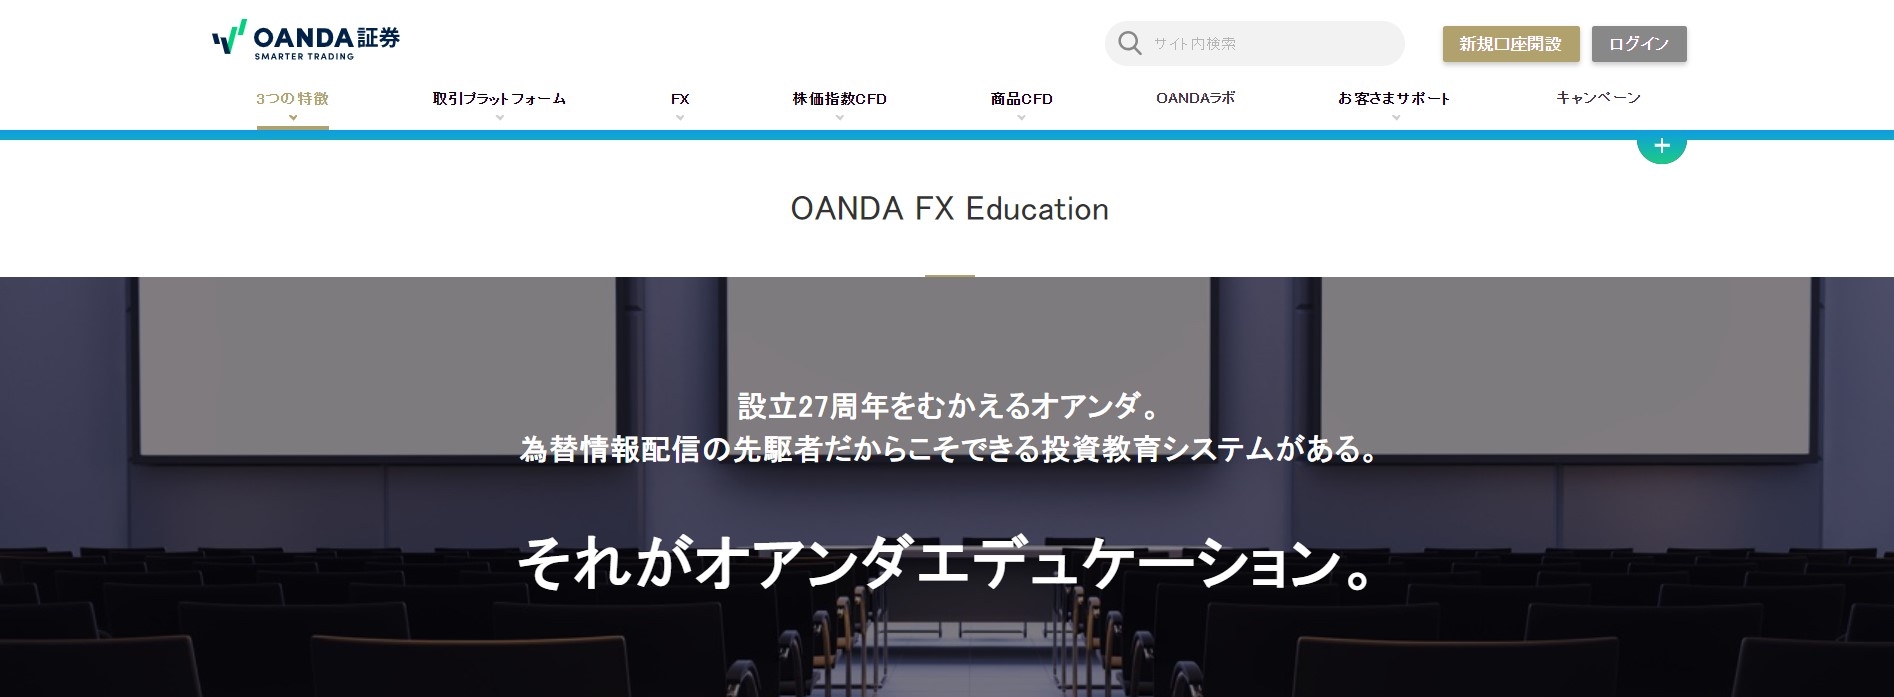 OANDA FX Education